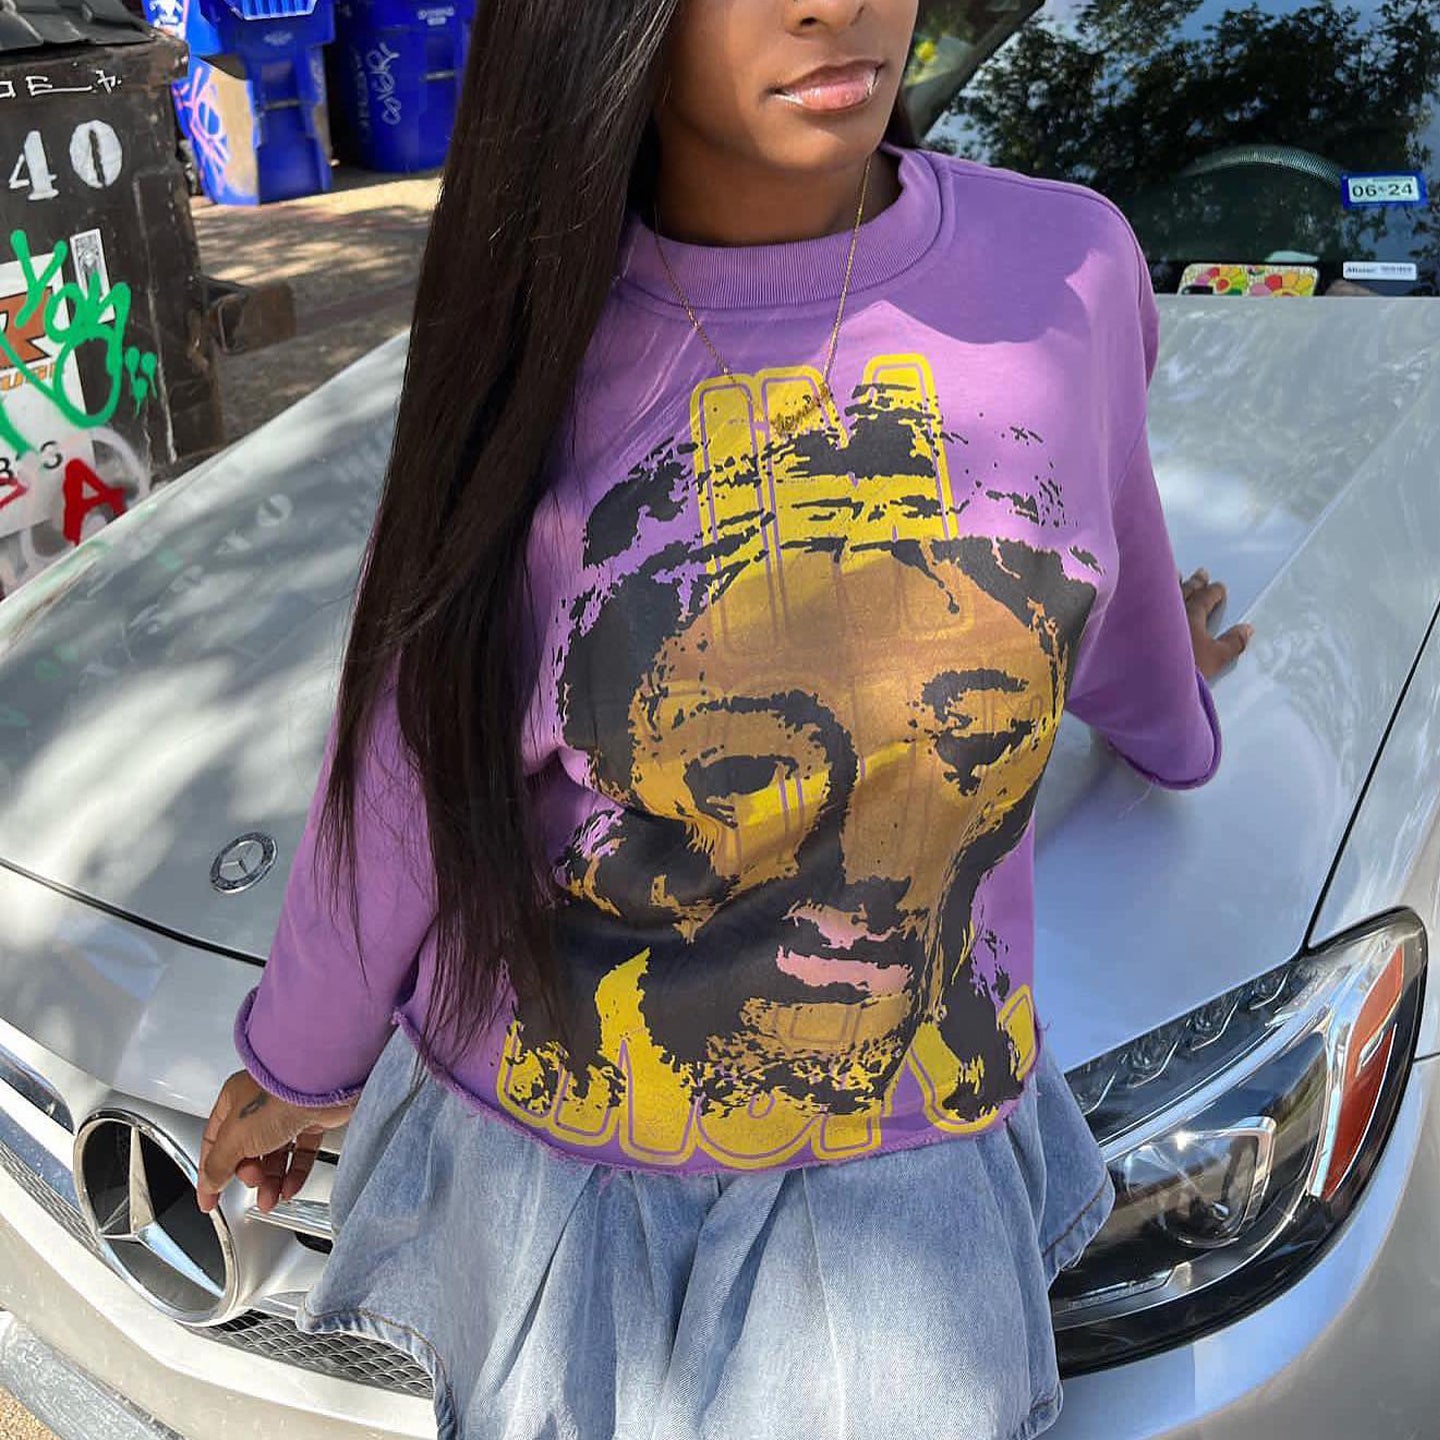 Jesus redemption print street sweatshirt